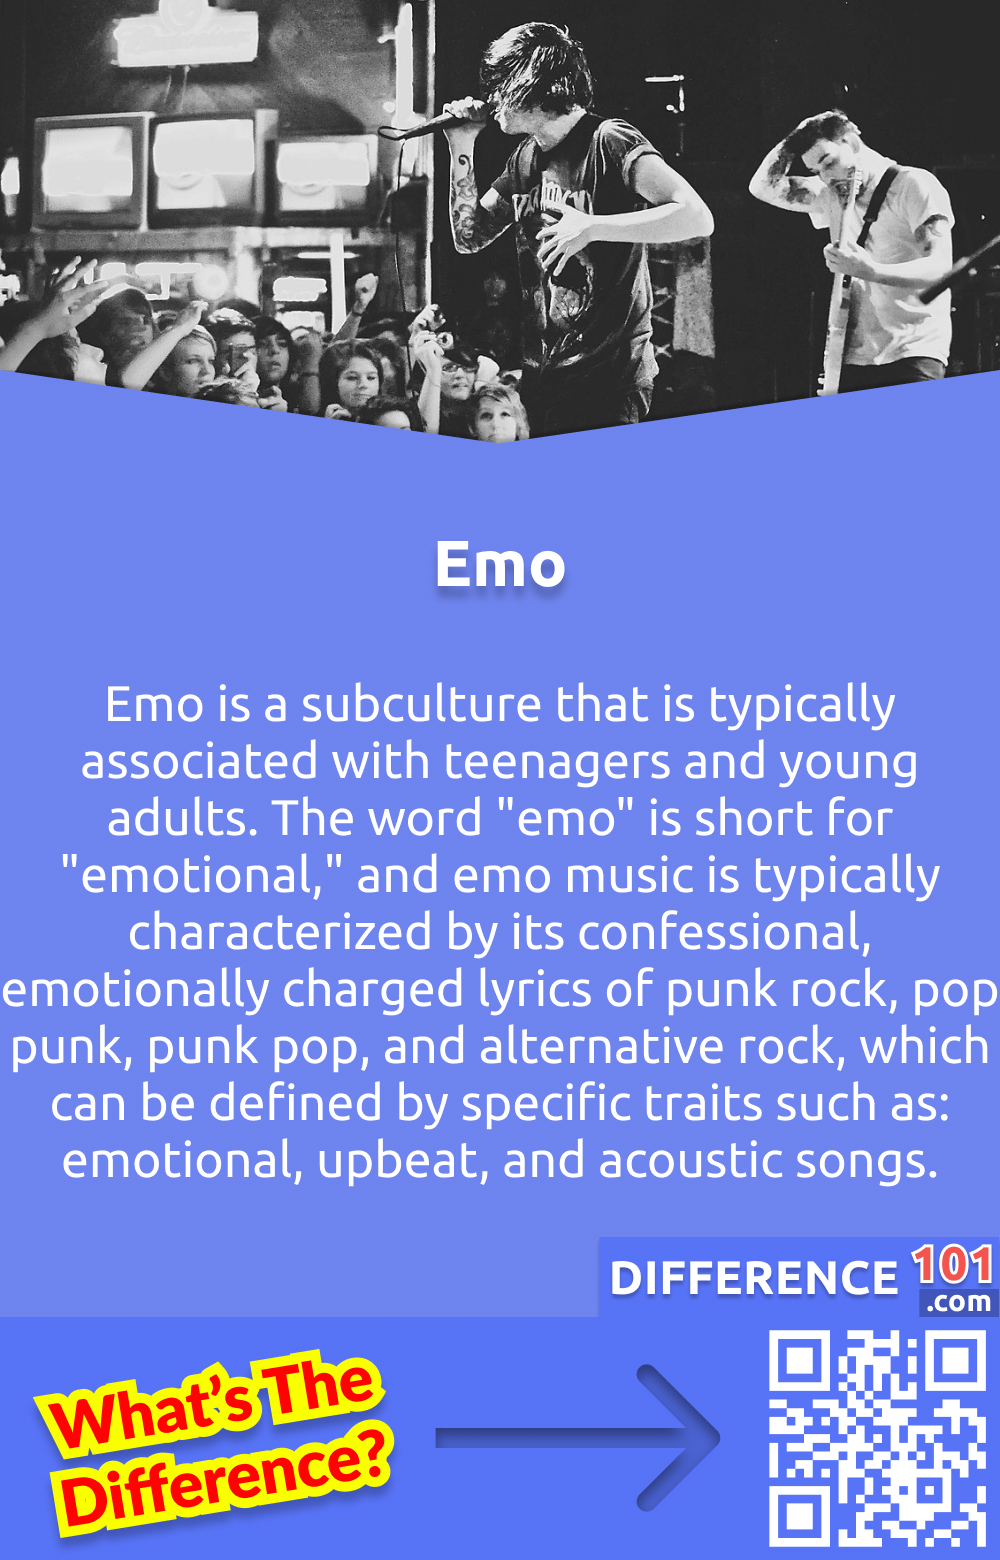 Qu'est-ce qu'un Emo ? L'emo est une sous-culture généralement associée aux adolescents et aux jeunes adultes. Le mot u0022emou0022 est l'abréviation de u0022emotional,u0022 et la musique emo est typiquement caractérisée par ses paroles confessionnelles, chargées d'émotions de punk rock, pop punk, punk pop et rock alternatif, qui peuvent être définies par des traits spécifiques tels que : des chansons émotionnelles, optimistes et acoustiques. L'emo est généralement interprété par des chanteurs ou des groupes au chant émotionnel.nLa mode emo se caractérise souvent par des jeans serrés, des vêtements noirs et des cheveux teints. La culture emo est souvent associée à l'angoisse, à la dépression et à la solitude.